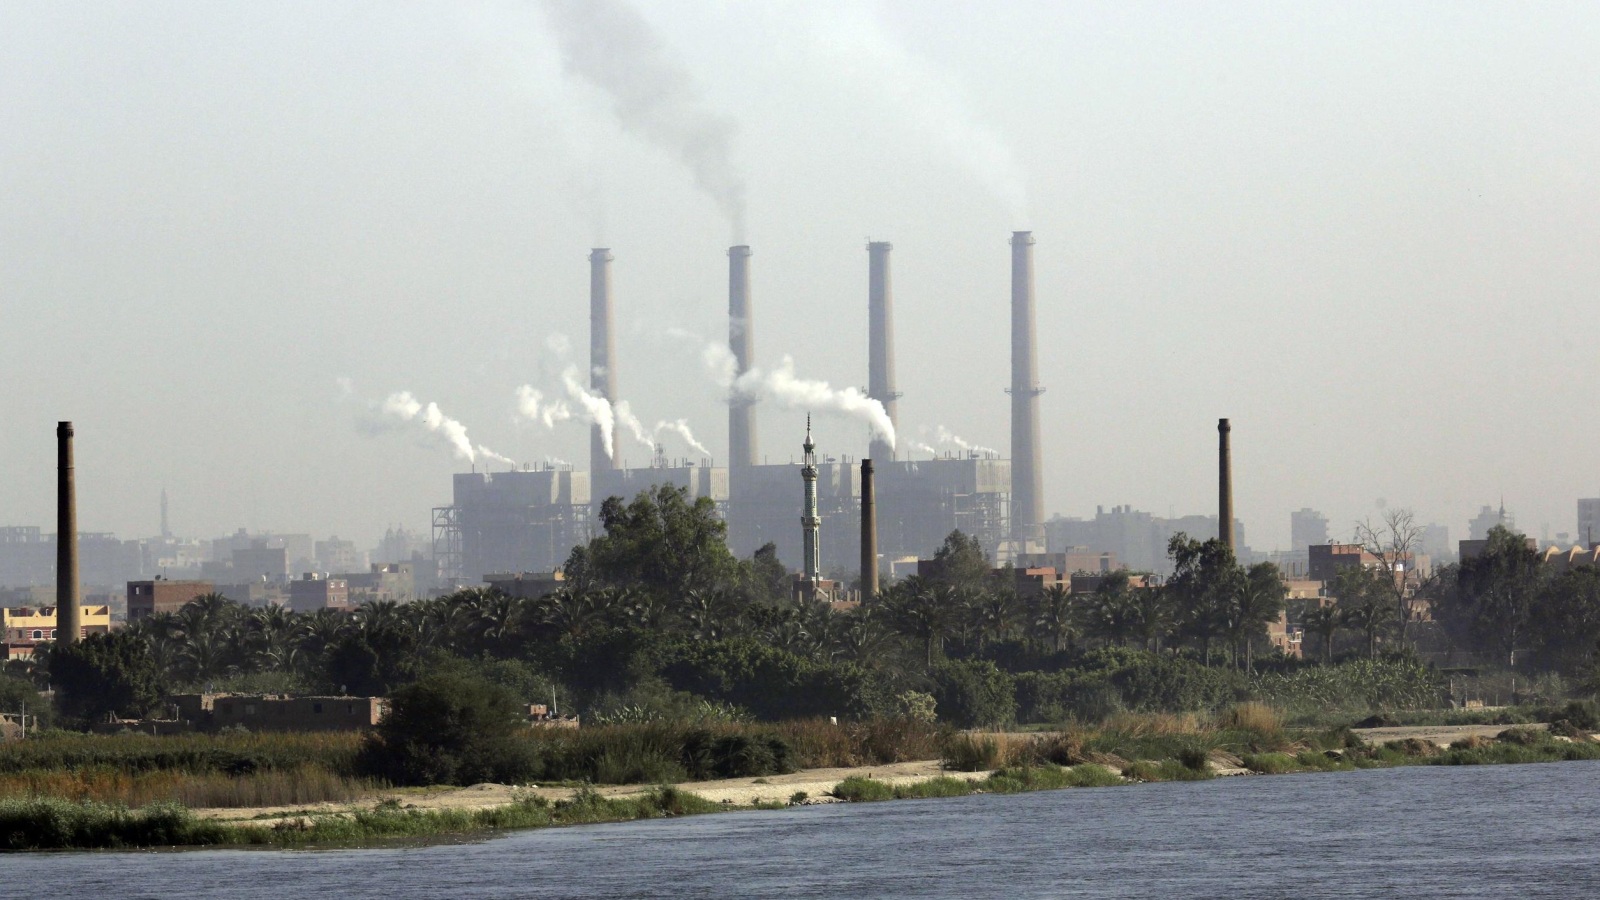 مصر تعتمد على الوقود الأحفوري بشكل رئيسي لتوليد الطاقة (أسوشيتد برس)